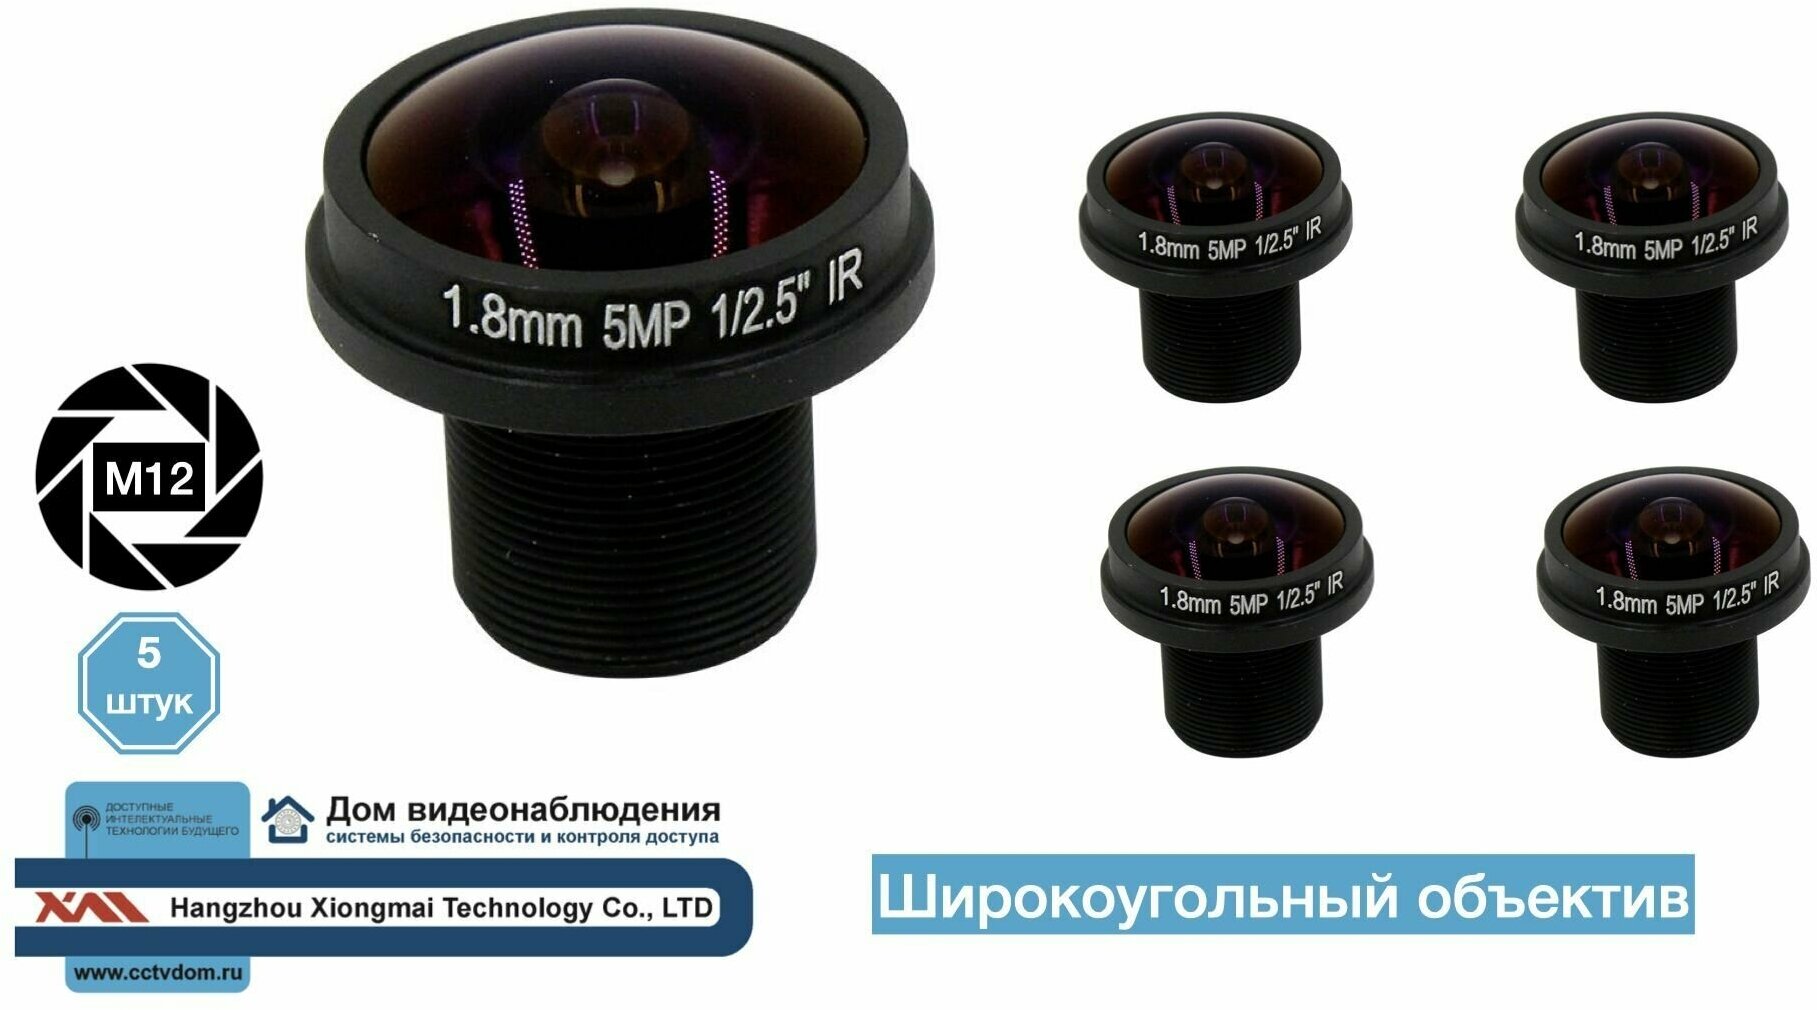 5MP 1.8mm. Широкоугольный объектив М12 5 штук